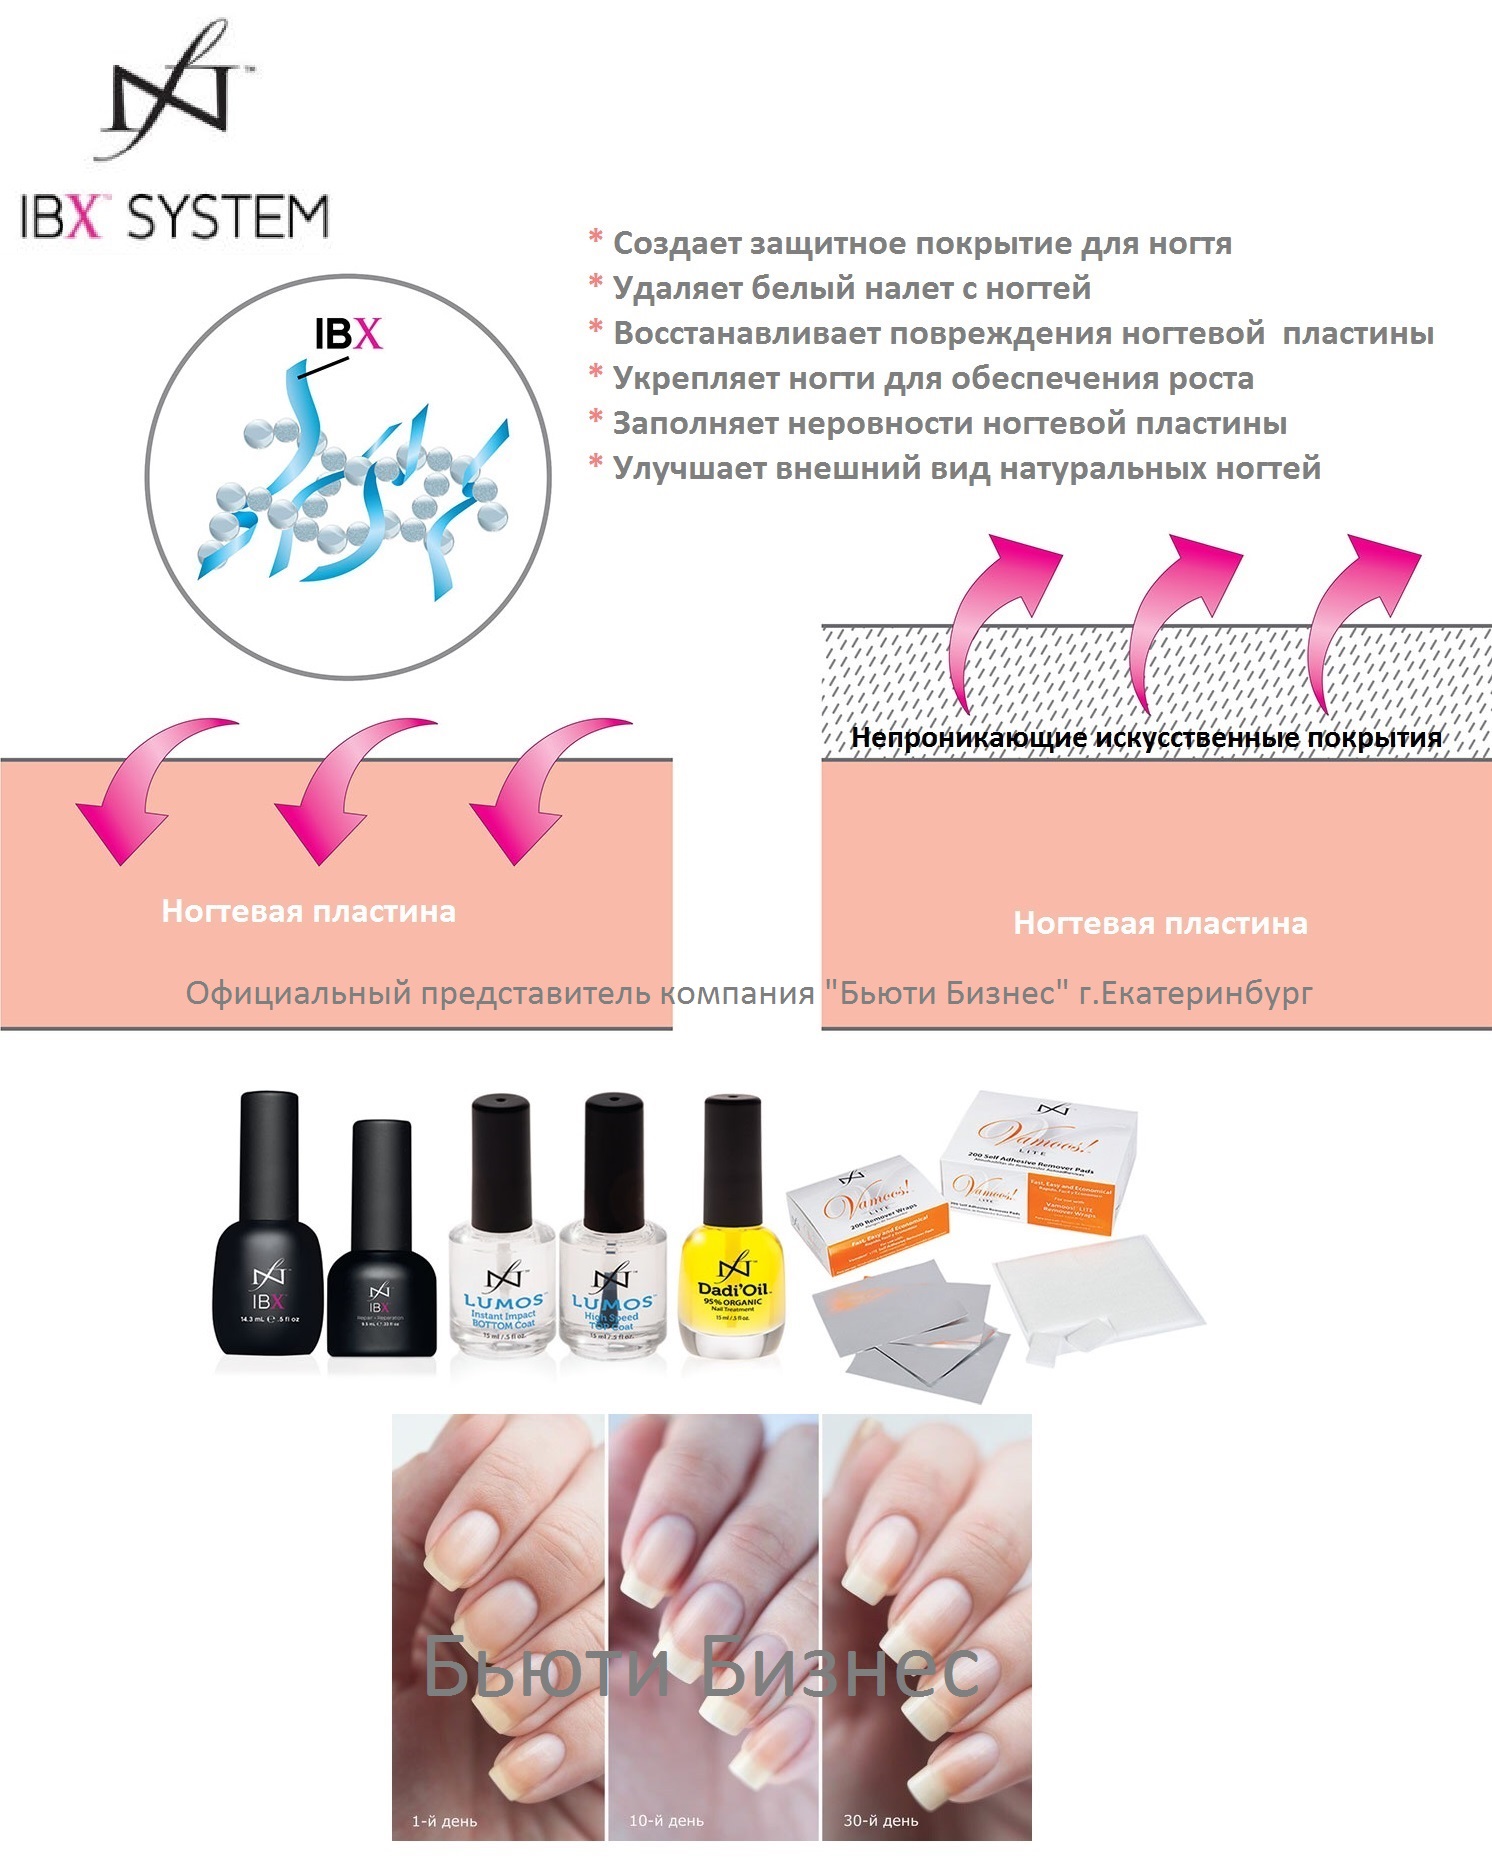 Ibx system – инновационная система укрепления ногтей